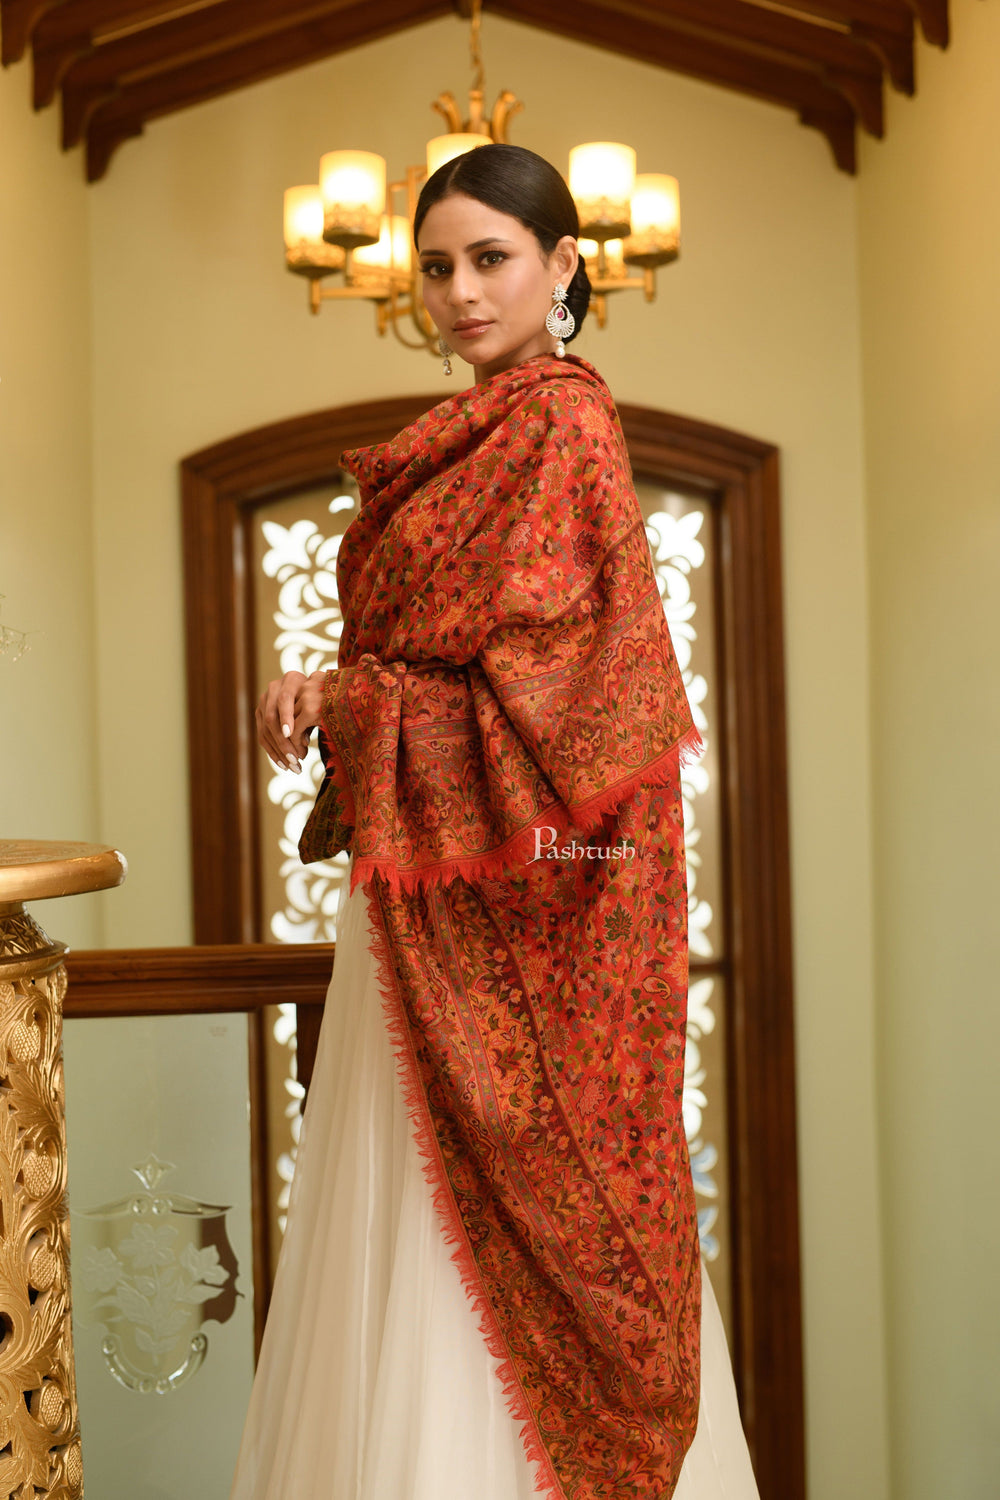 Pashtush India Womens Shawls Pashtush Womens 100% Pure Wool With Woolmark Certificate Shawl, Ethnic Weave Design, Red